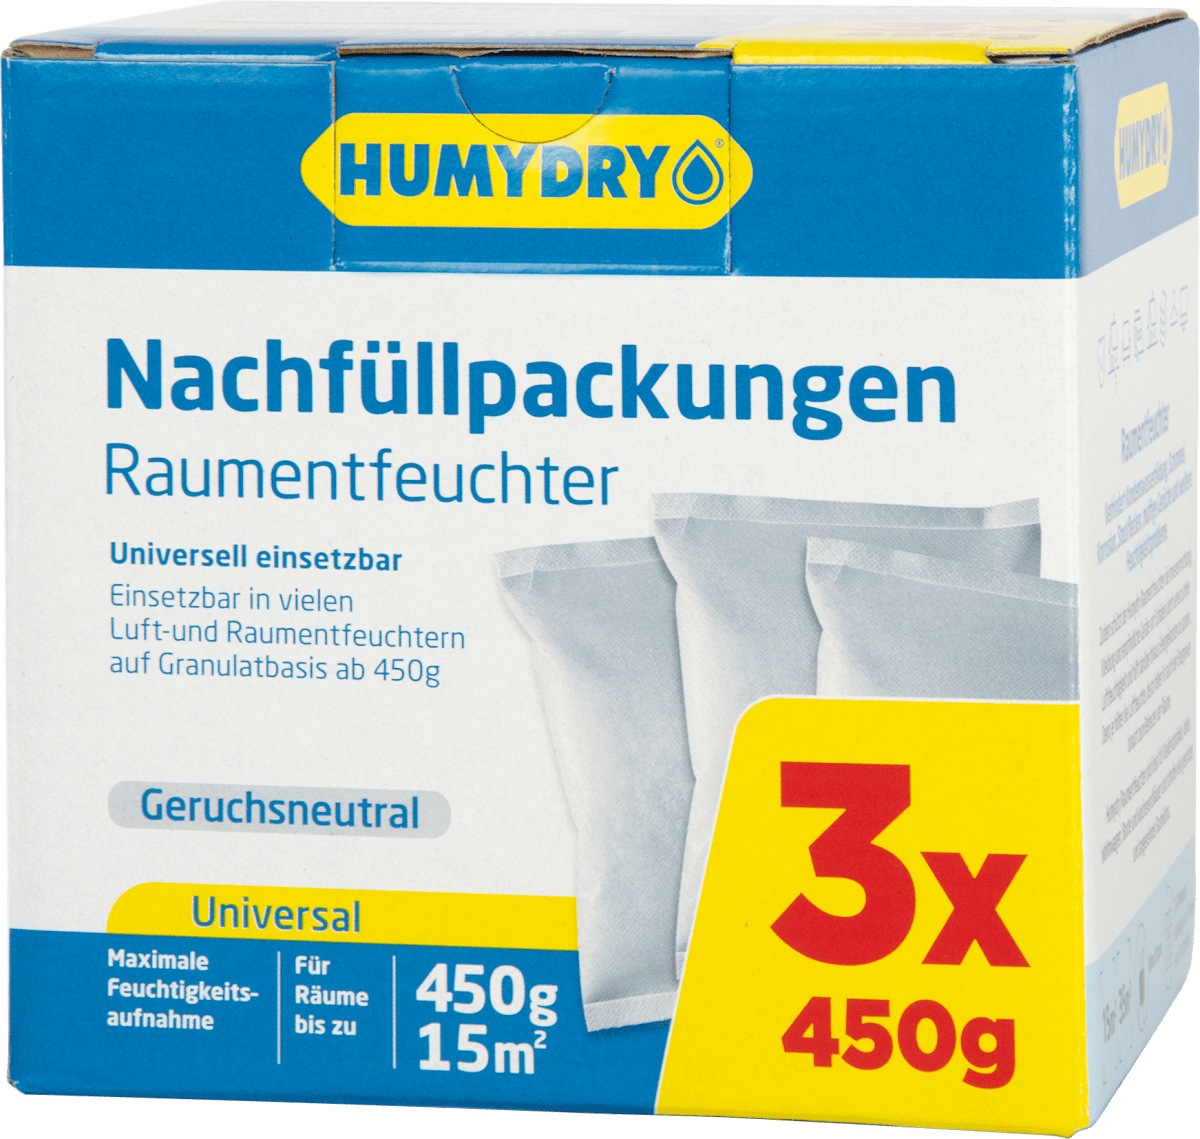 HUMYDRY® Raumentfeuchter-Nachfüllpackung 1kg